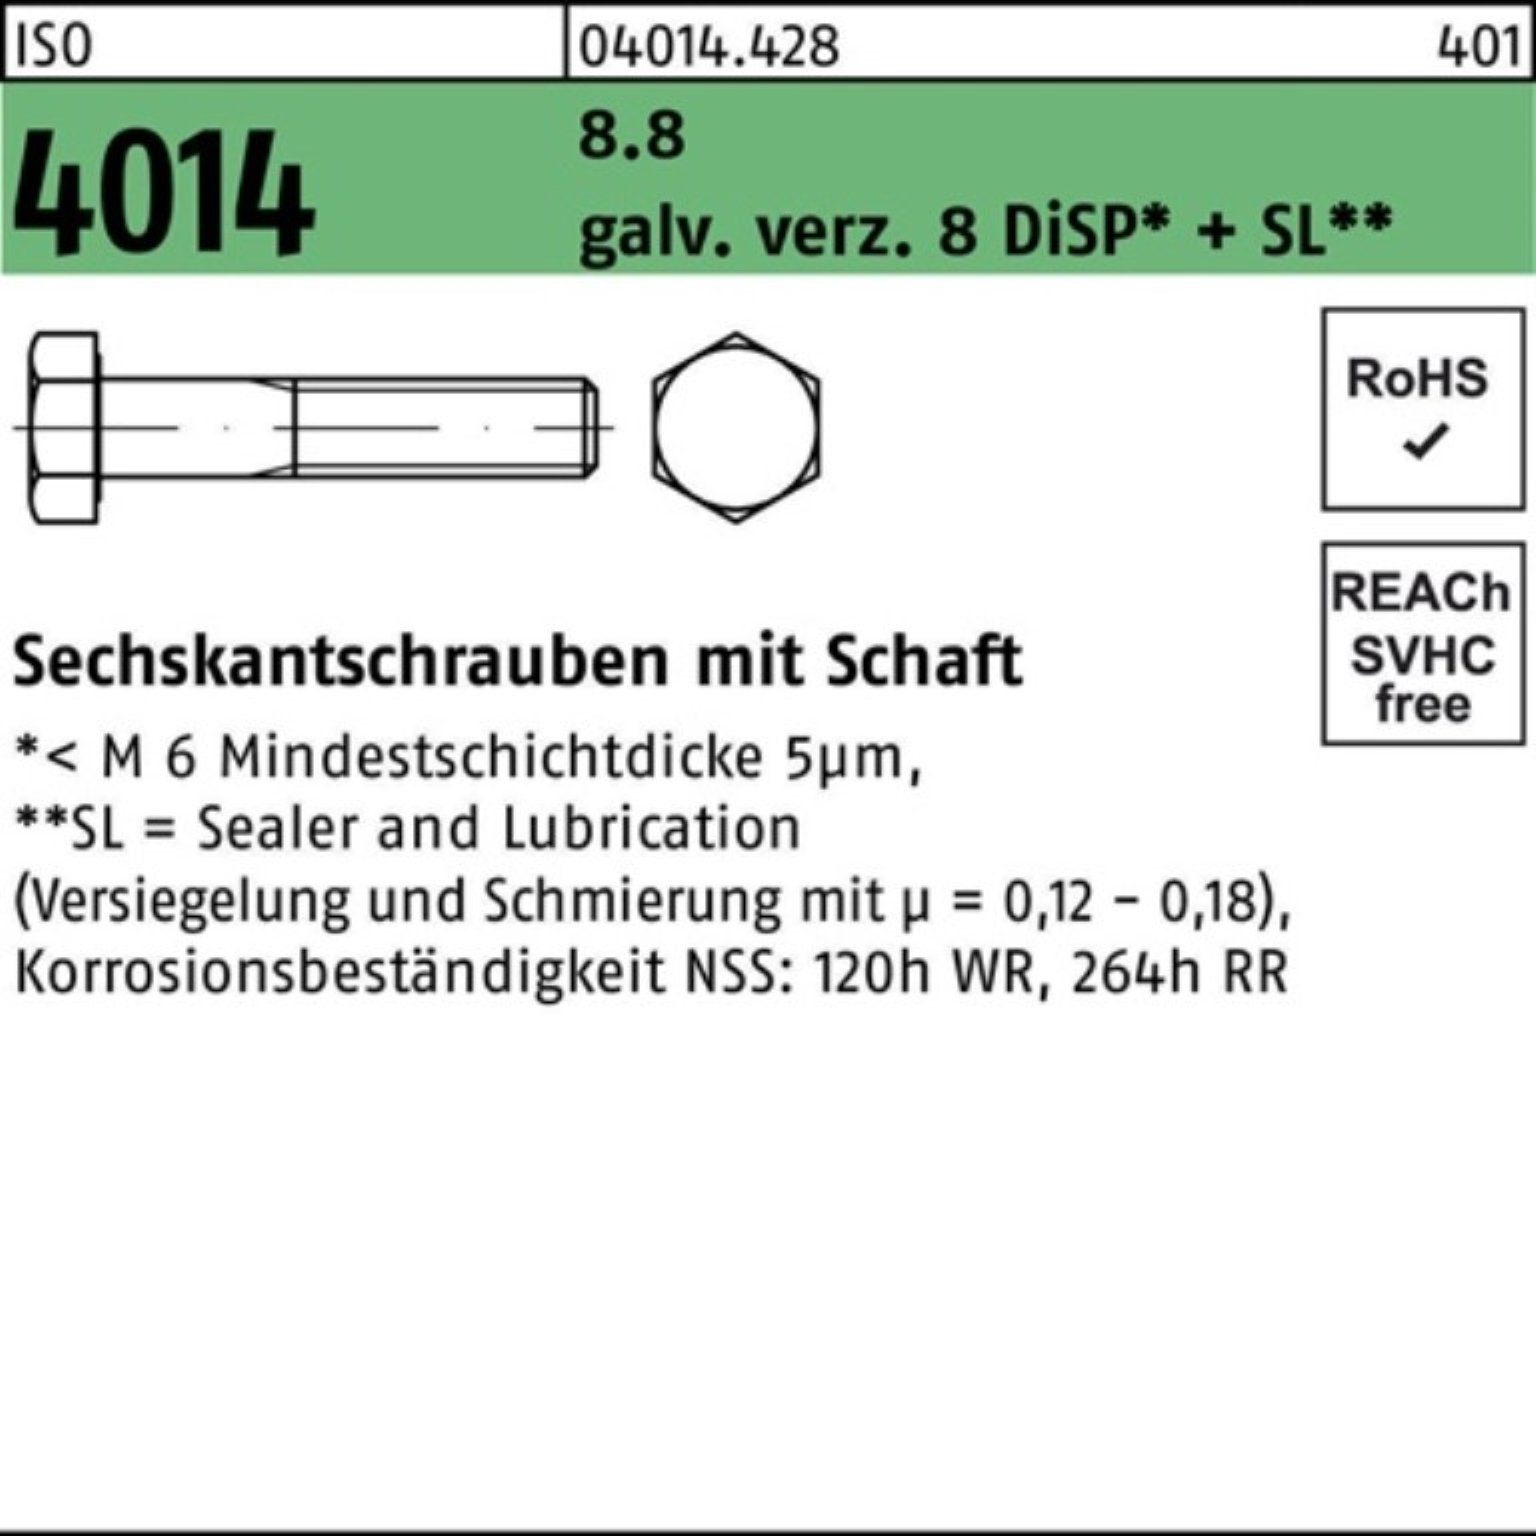 Bufab Sechskantschraube 100er galv.verz. ISO Schaft 8.8 8 4014 Sechskantschraube M20x280 Pack